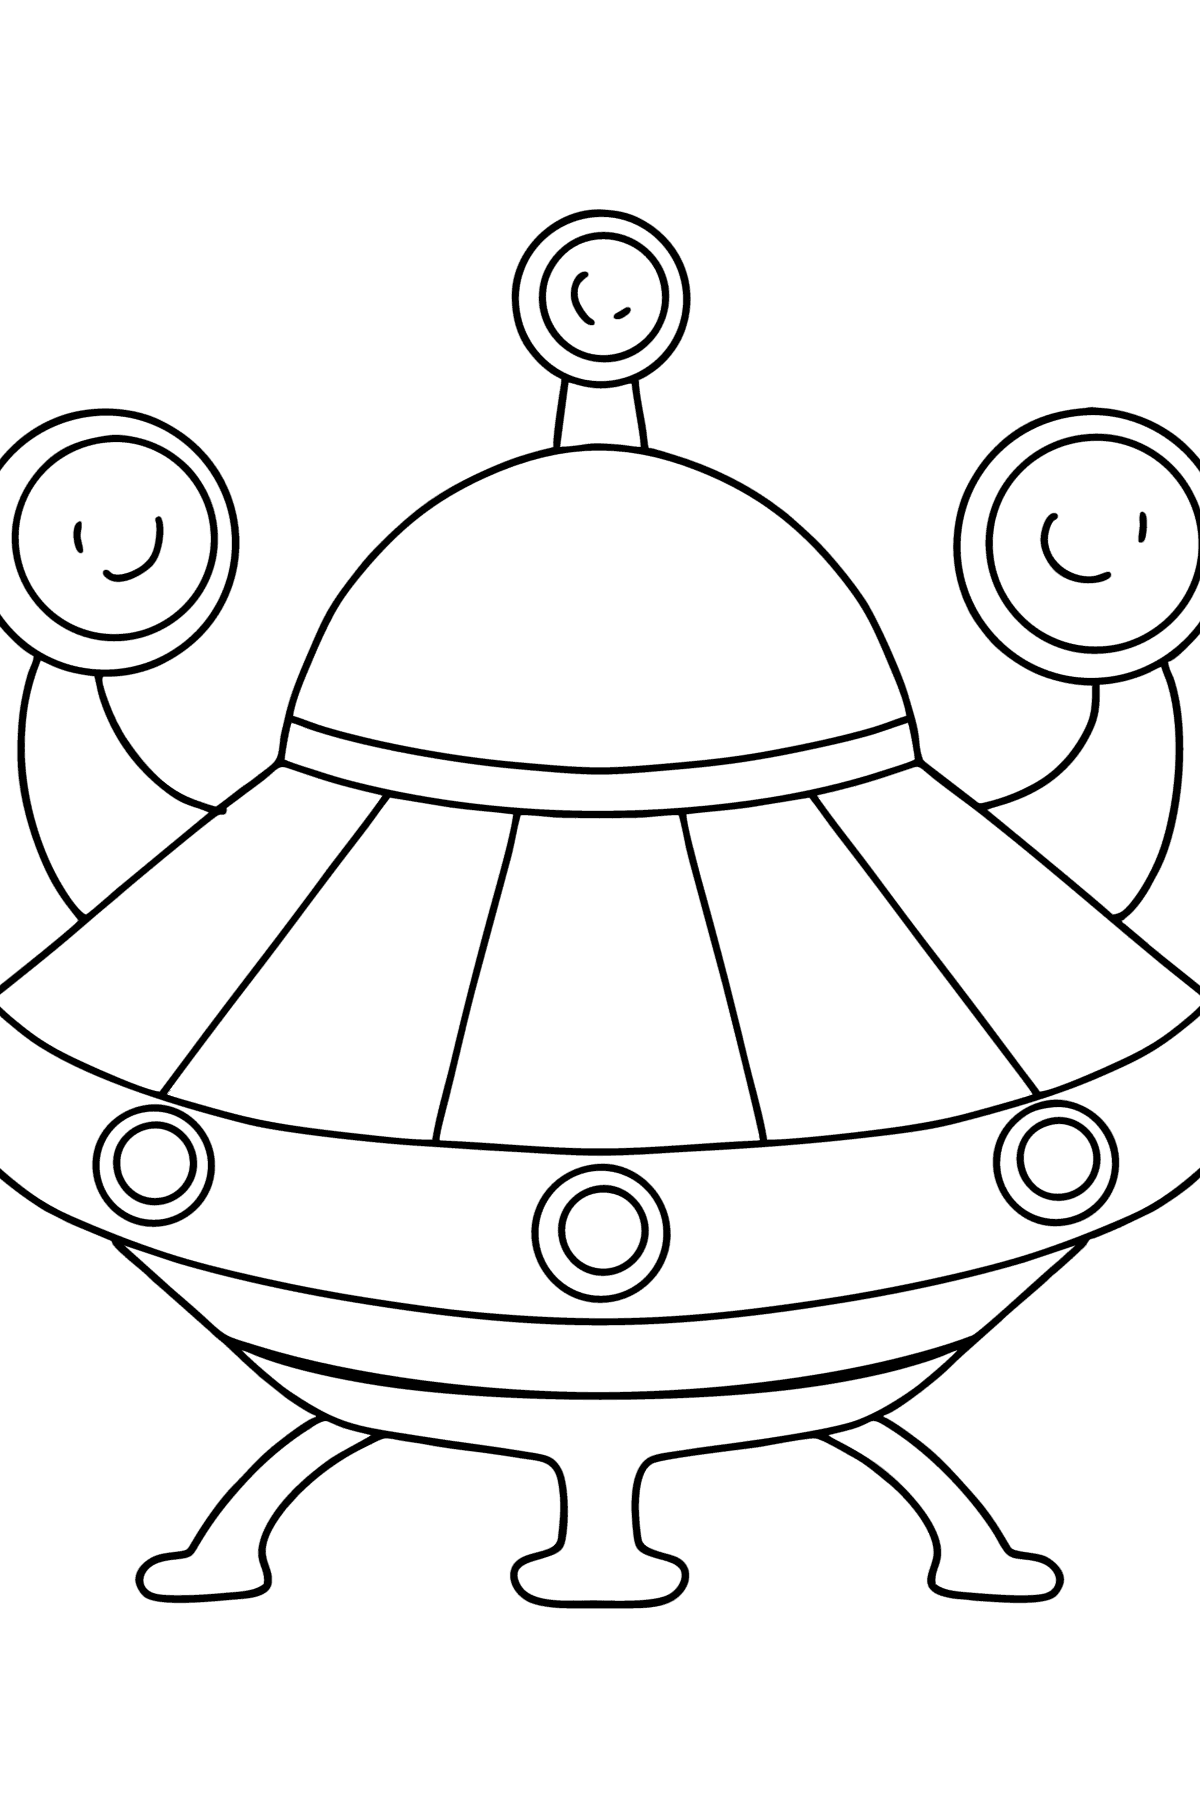 Desenho para colorir nave alienígena - Imagens para Colorir para Crianças